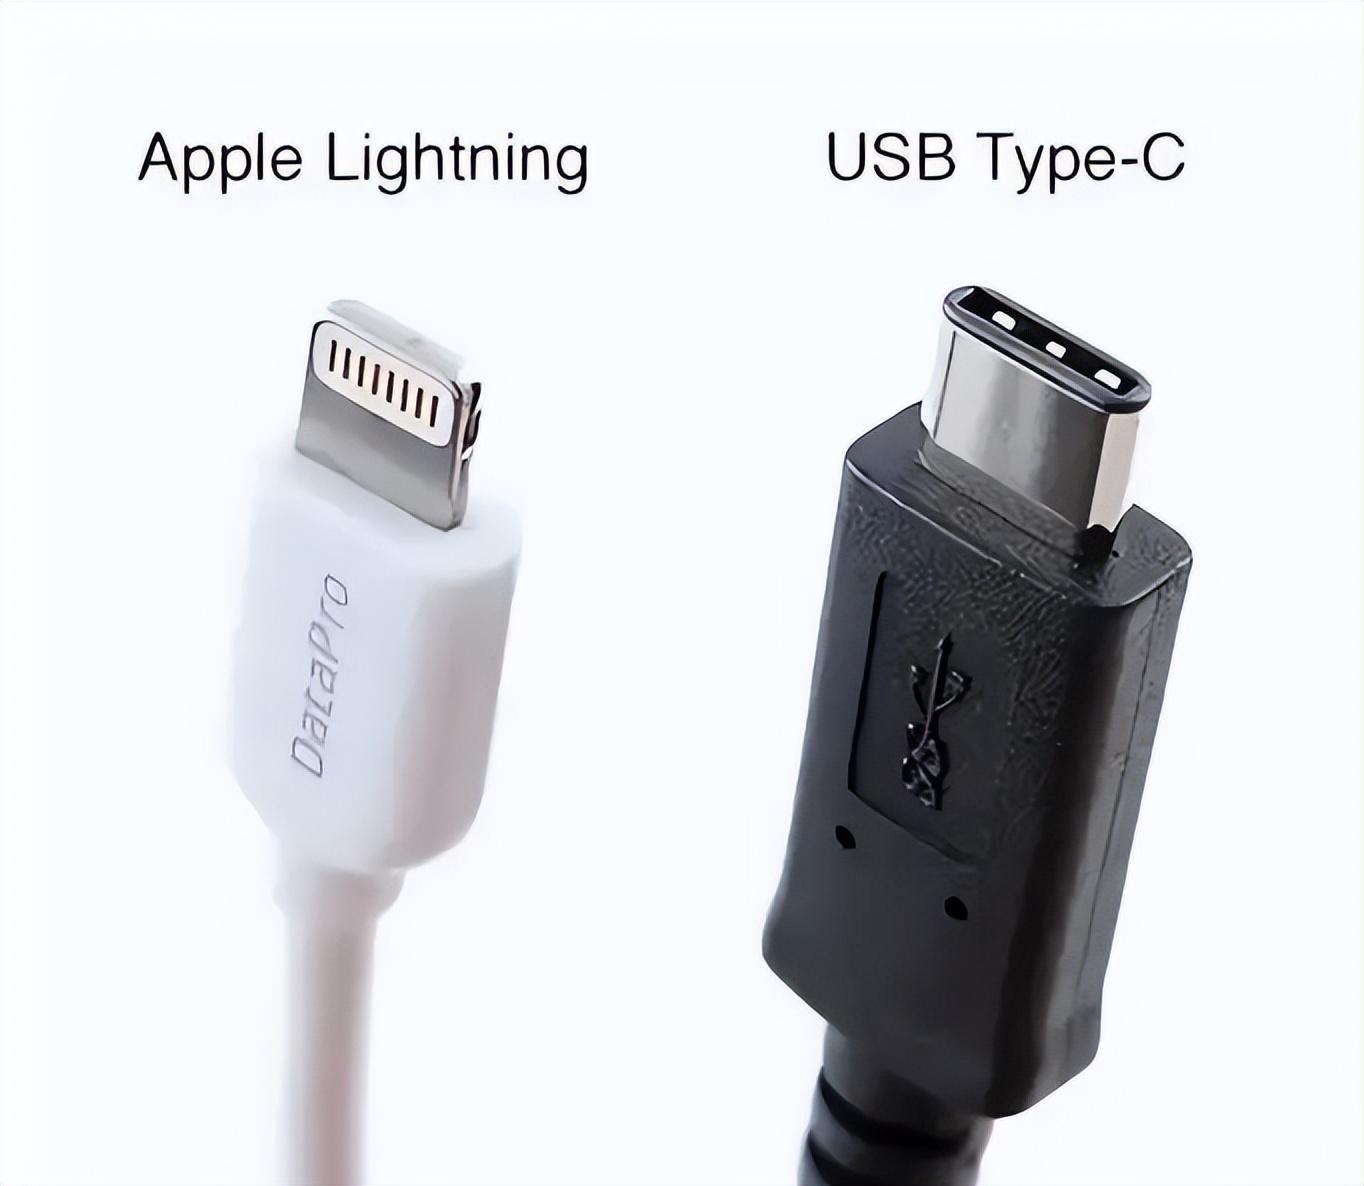 iPhone15将被强制使用USB-C